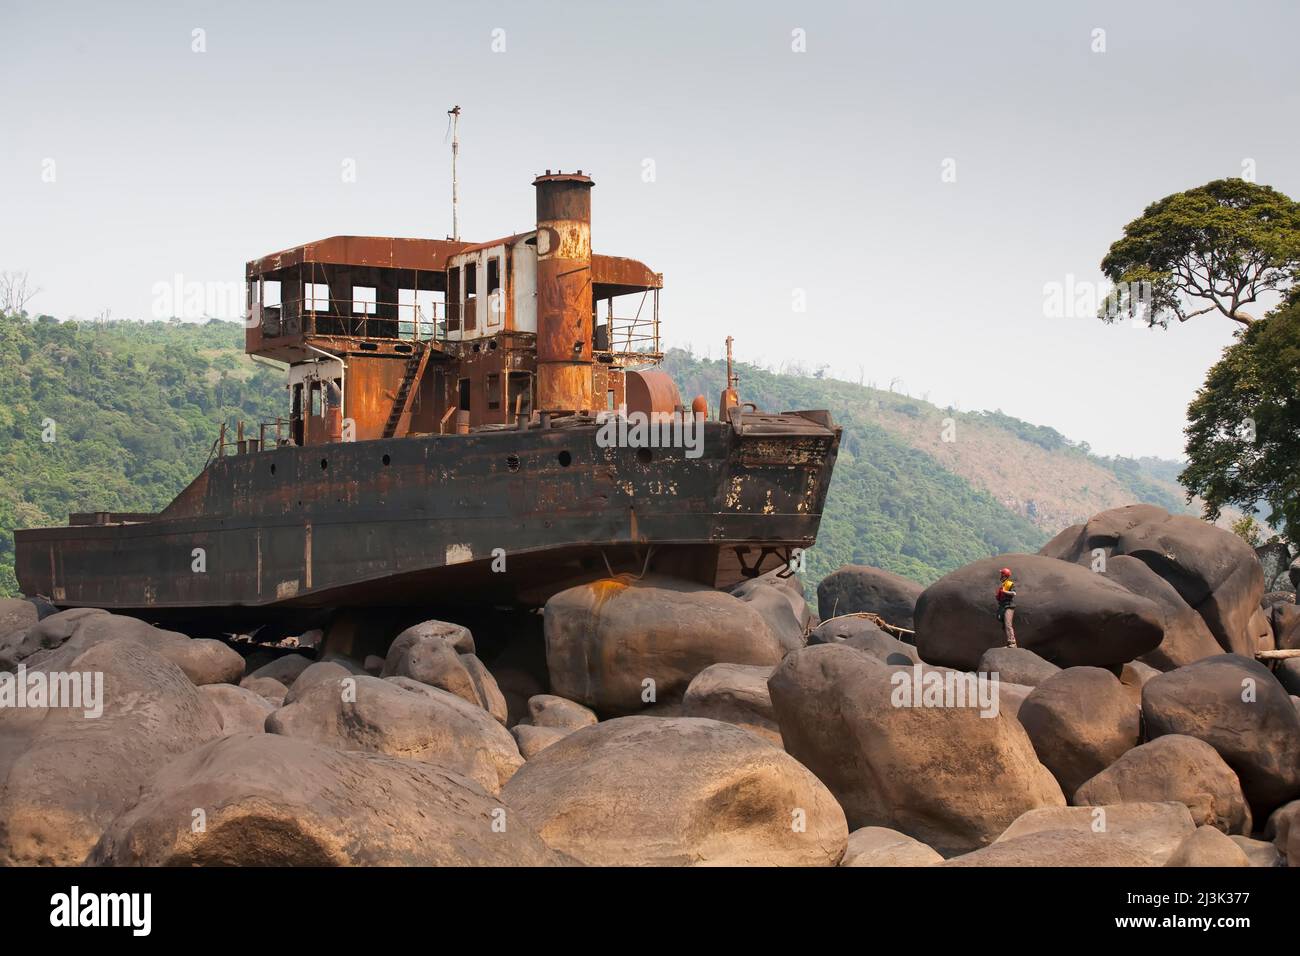 Die Hälfte eines großen Frachtschiffs befindet sich auf einem Felsenhaufen; Kongo, Demokratische Republik Kongo. Stockfoto